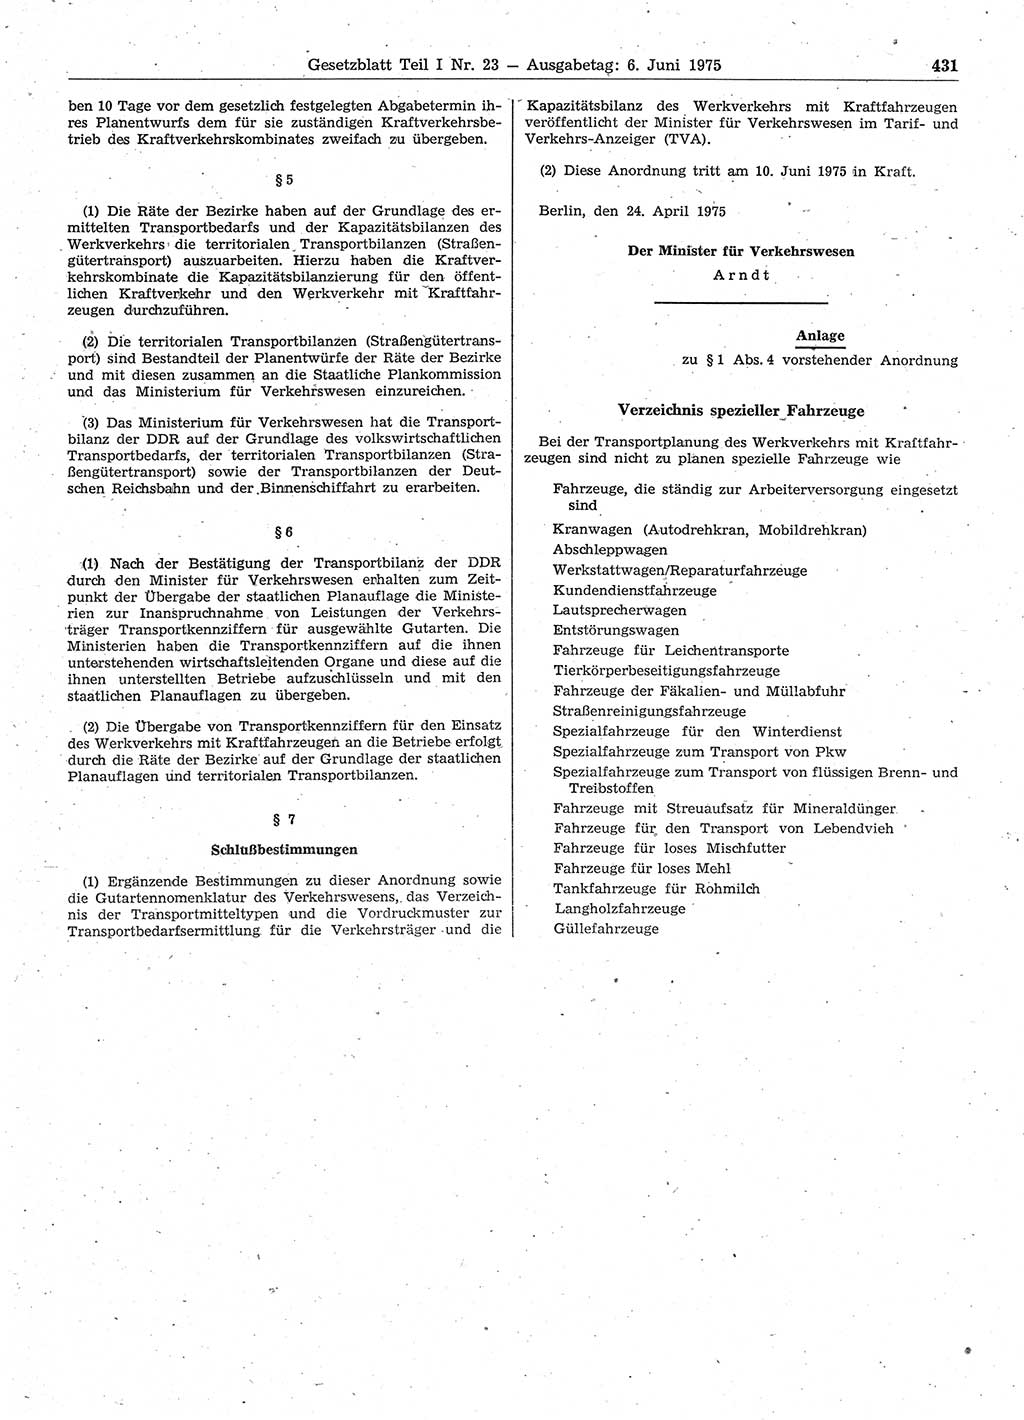 Gesetzblatt (GBl.) der Deutschen Demokratischen Republik (DDR) Teil Ⅰ 1975, Seite 431 (GBl. DDR Ⅰ 1975, S. 431)